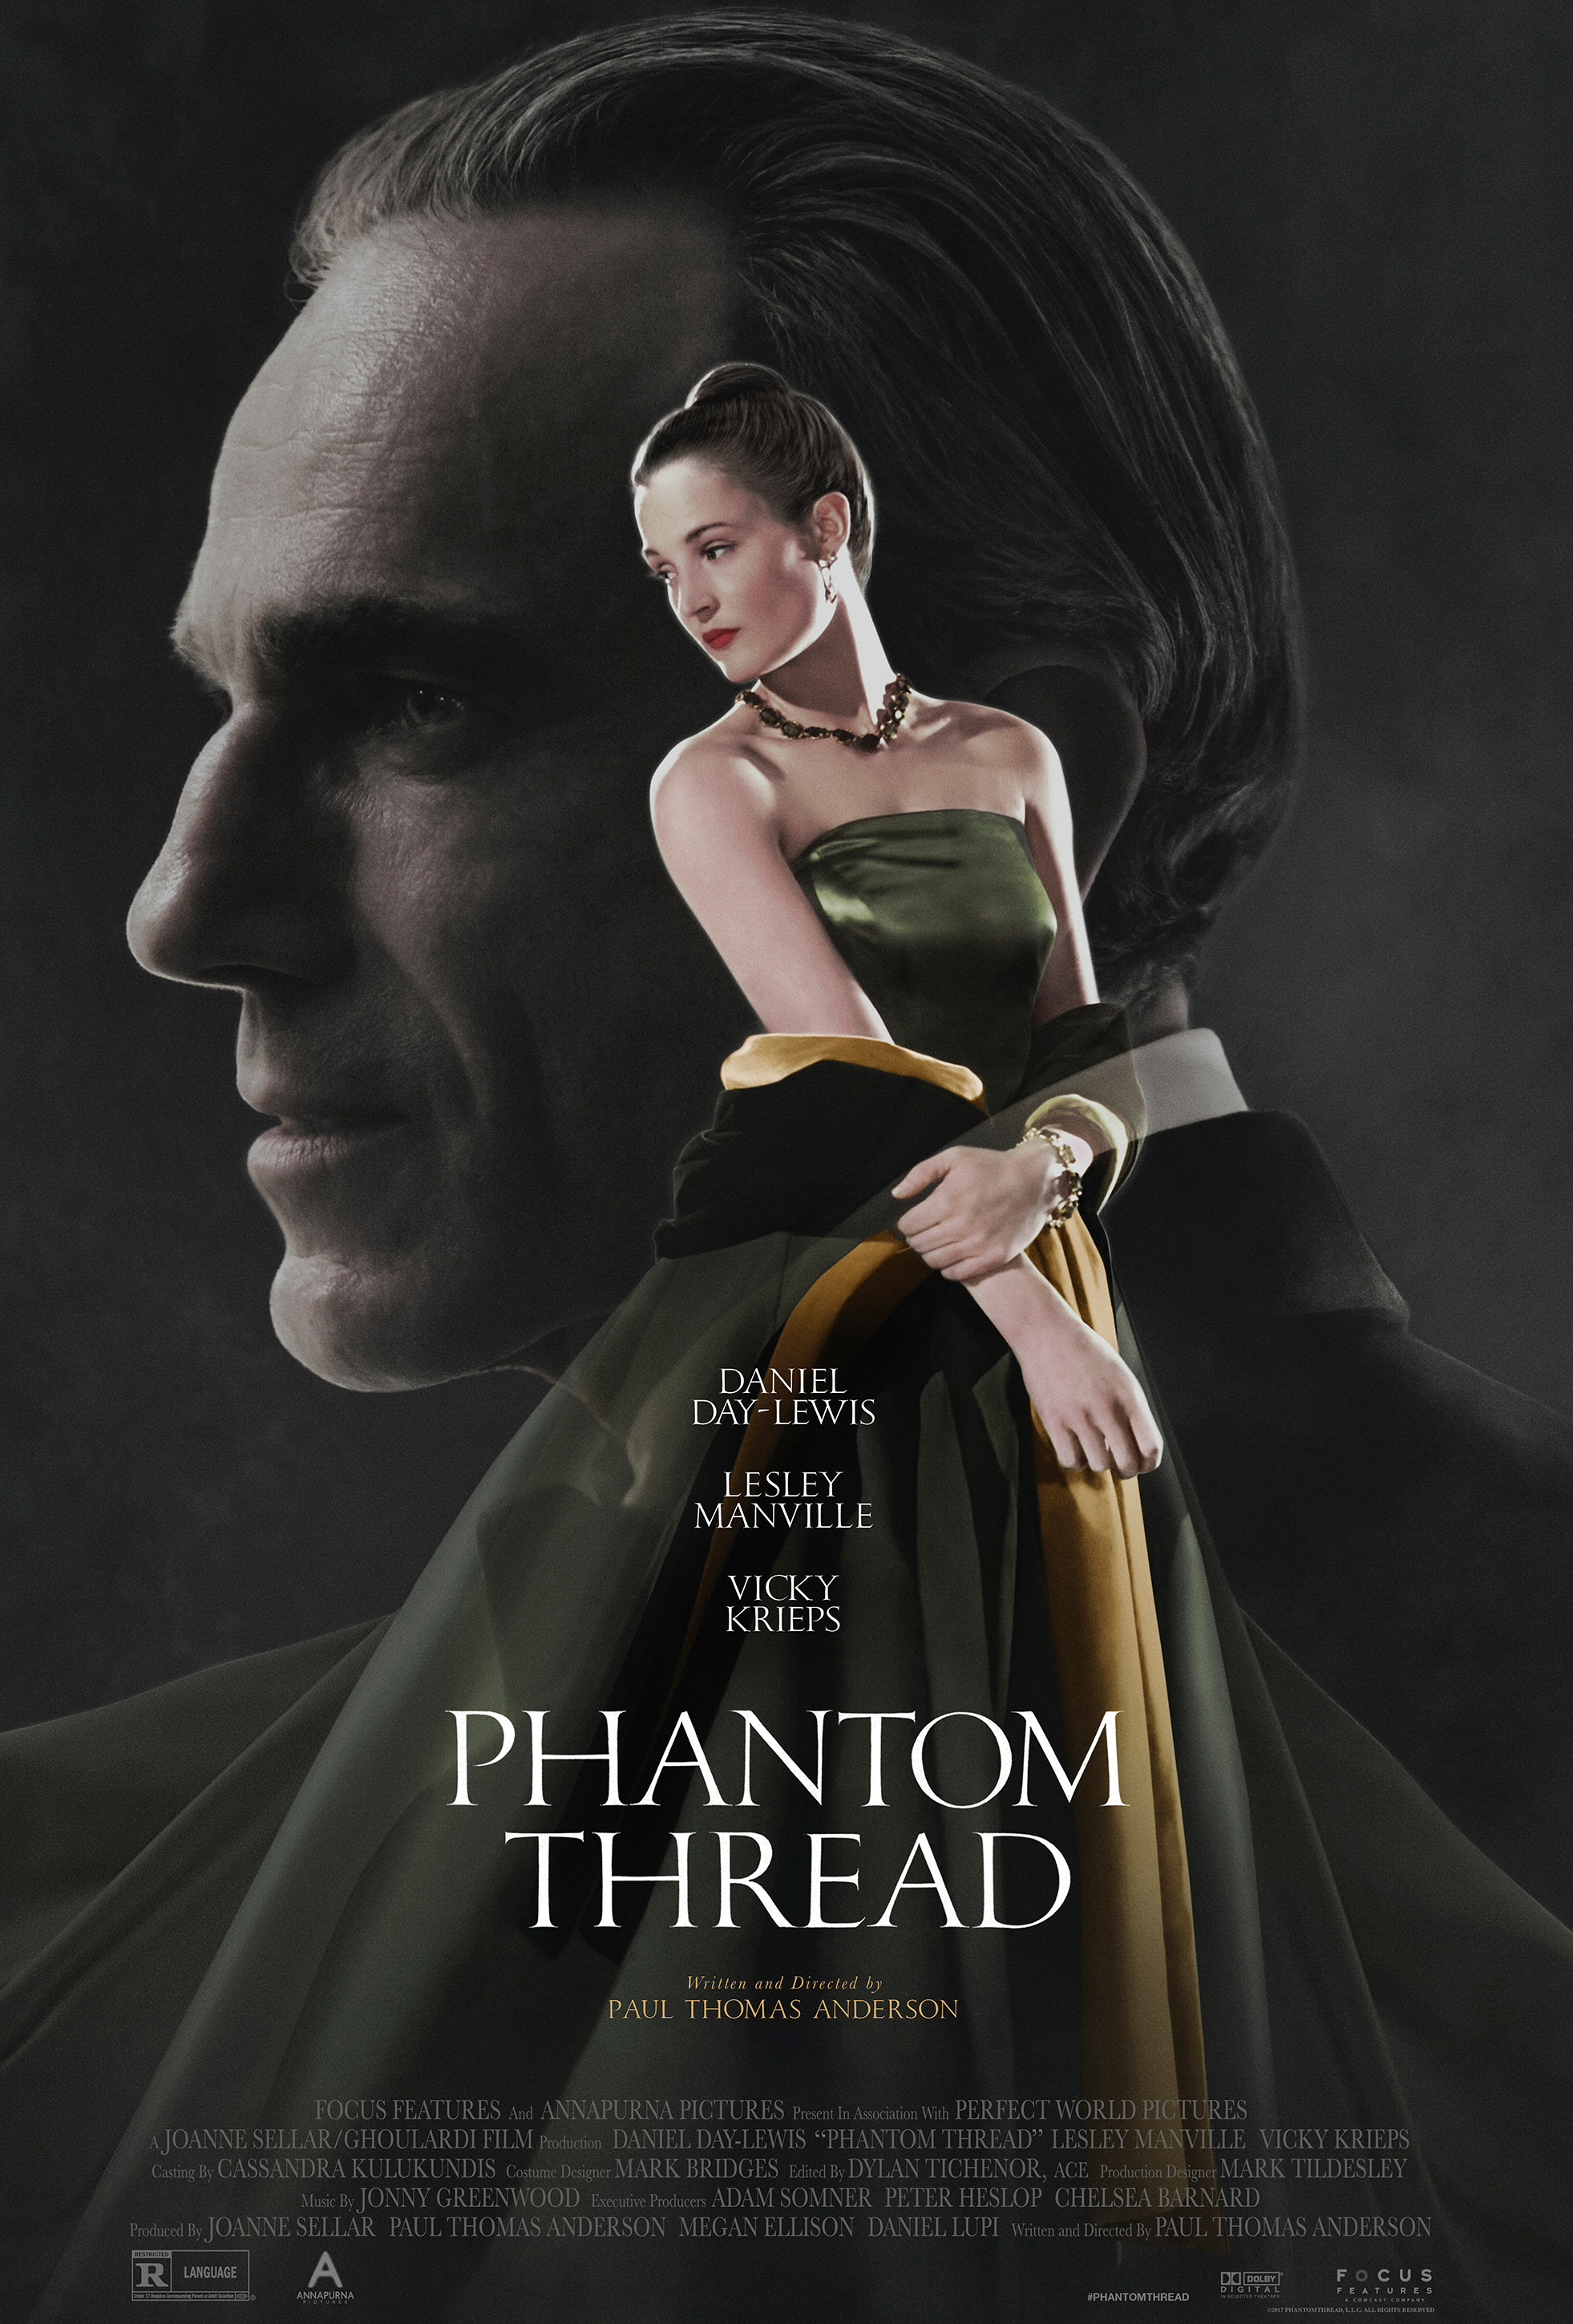 Nonton film Phantom Thread layarkaca21 indoxx1 ganool online streaming terbaru